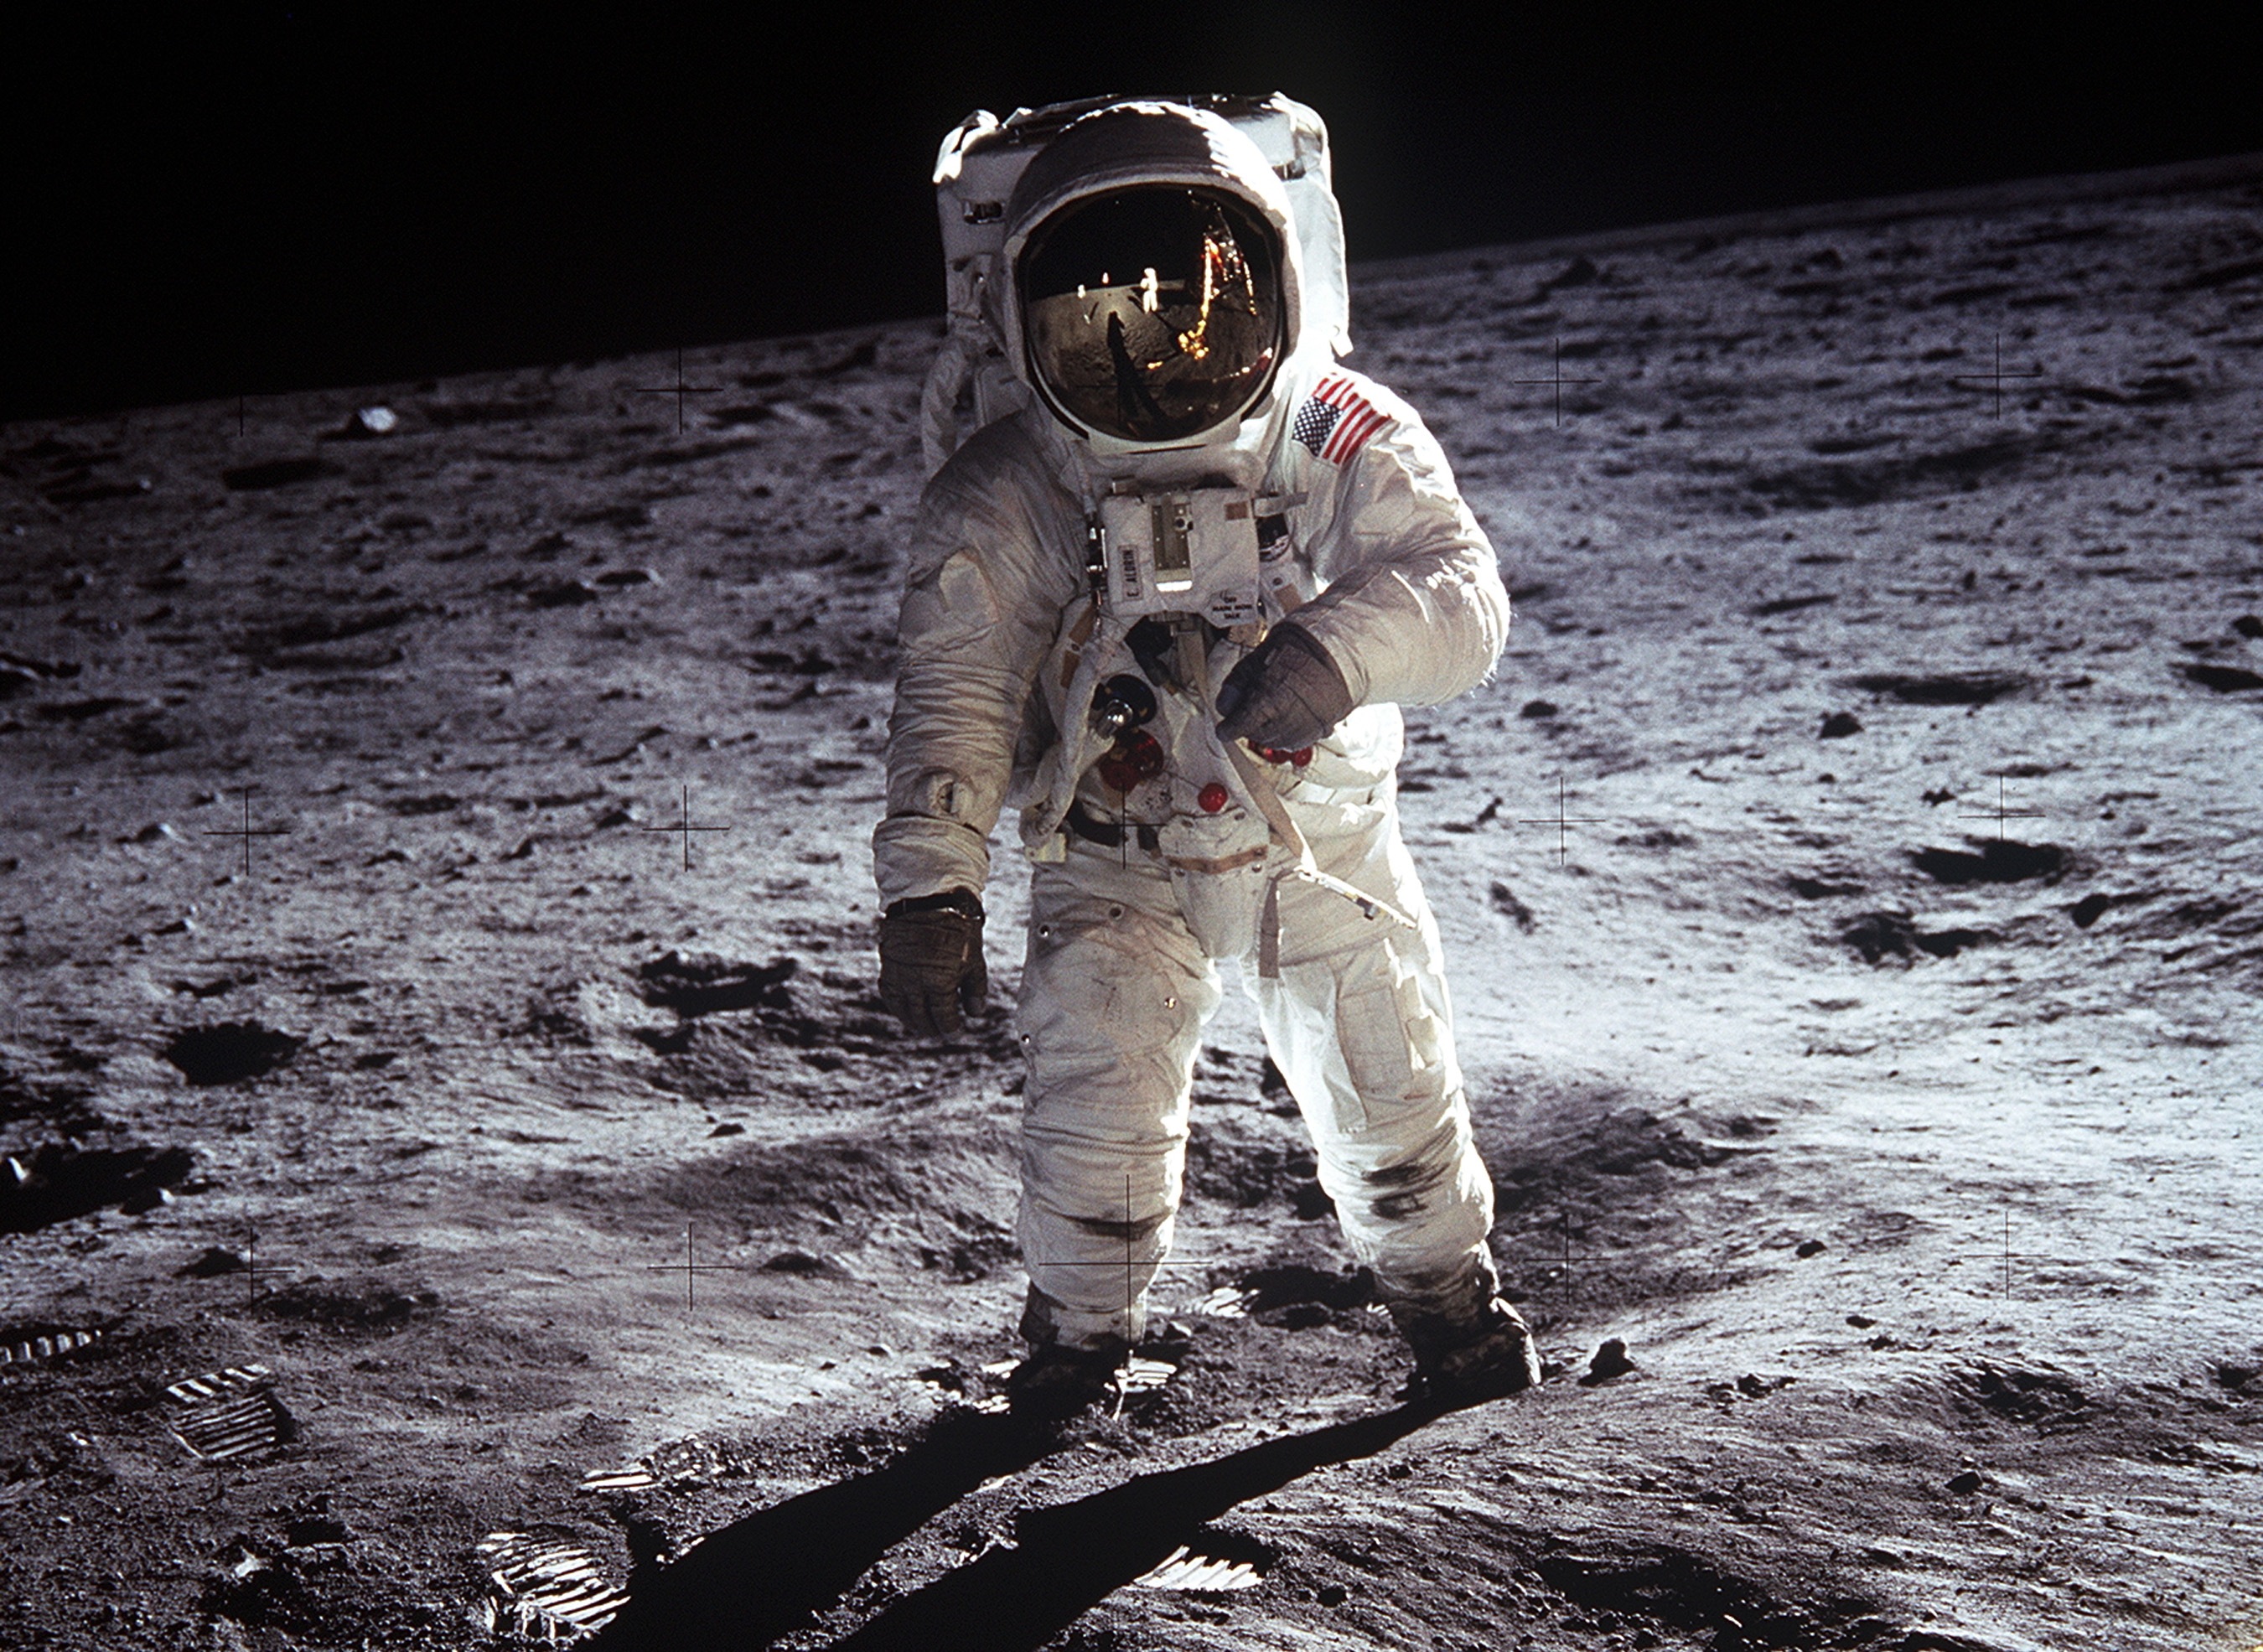 Jacheta purtată de Buzz Aldrin în misiunea Apollo 11 a fost vândută cu peste 2 milioane de dolari